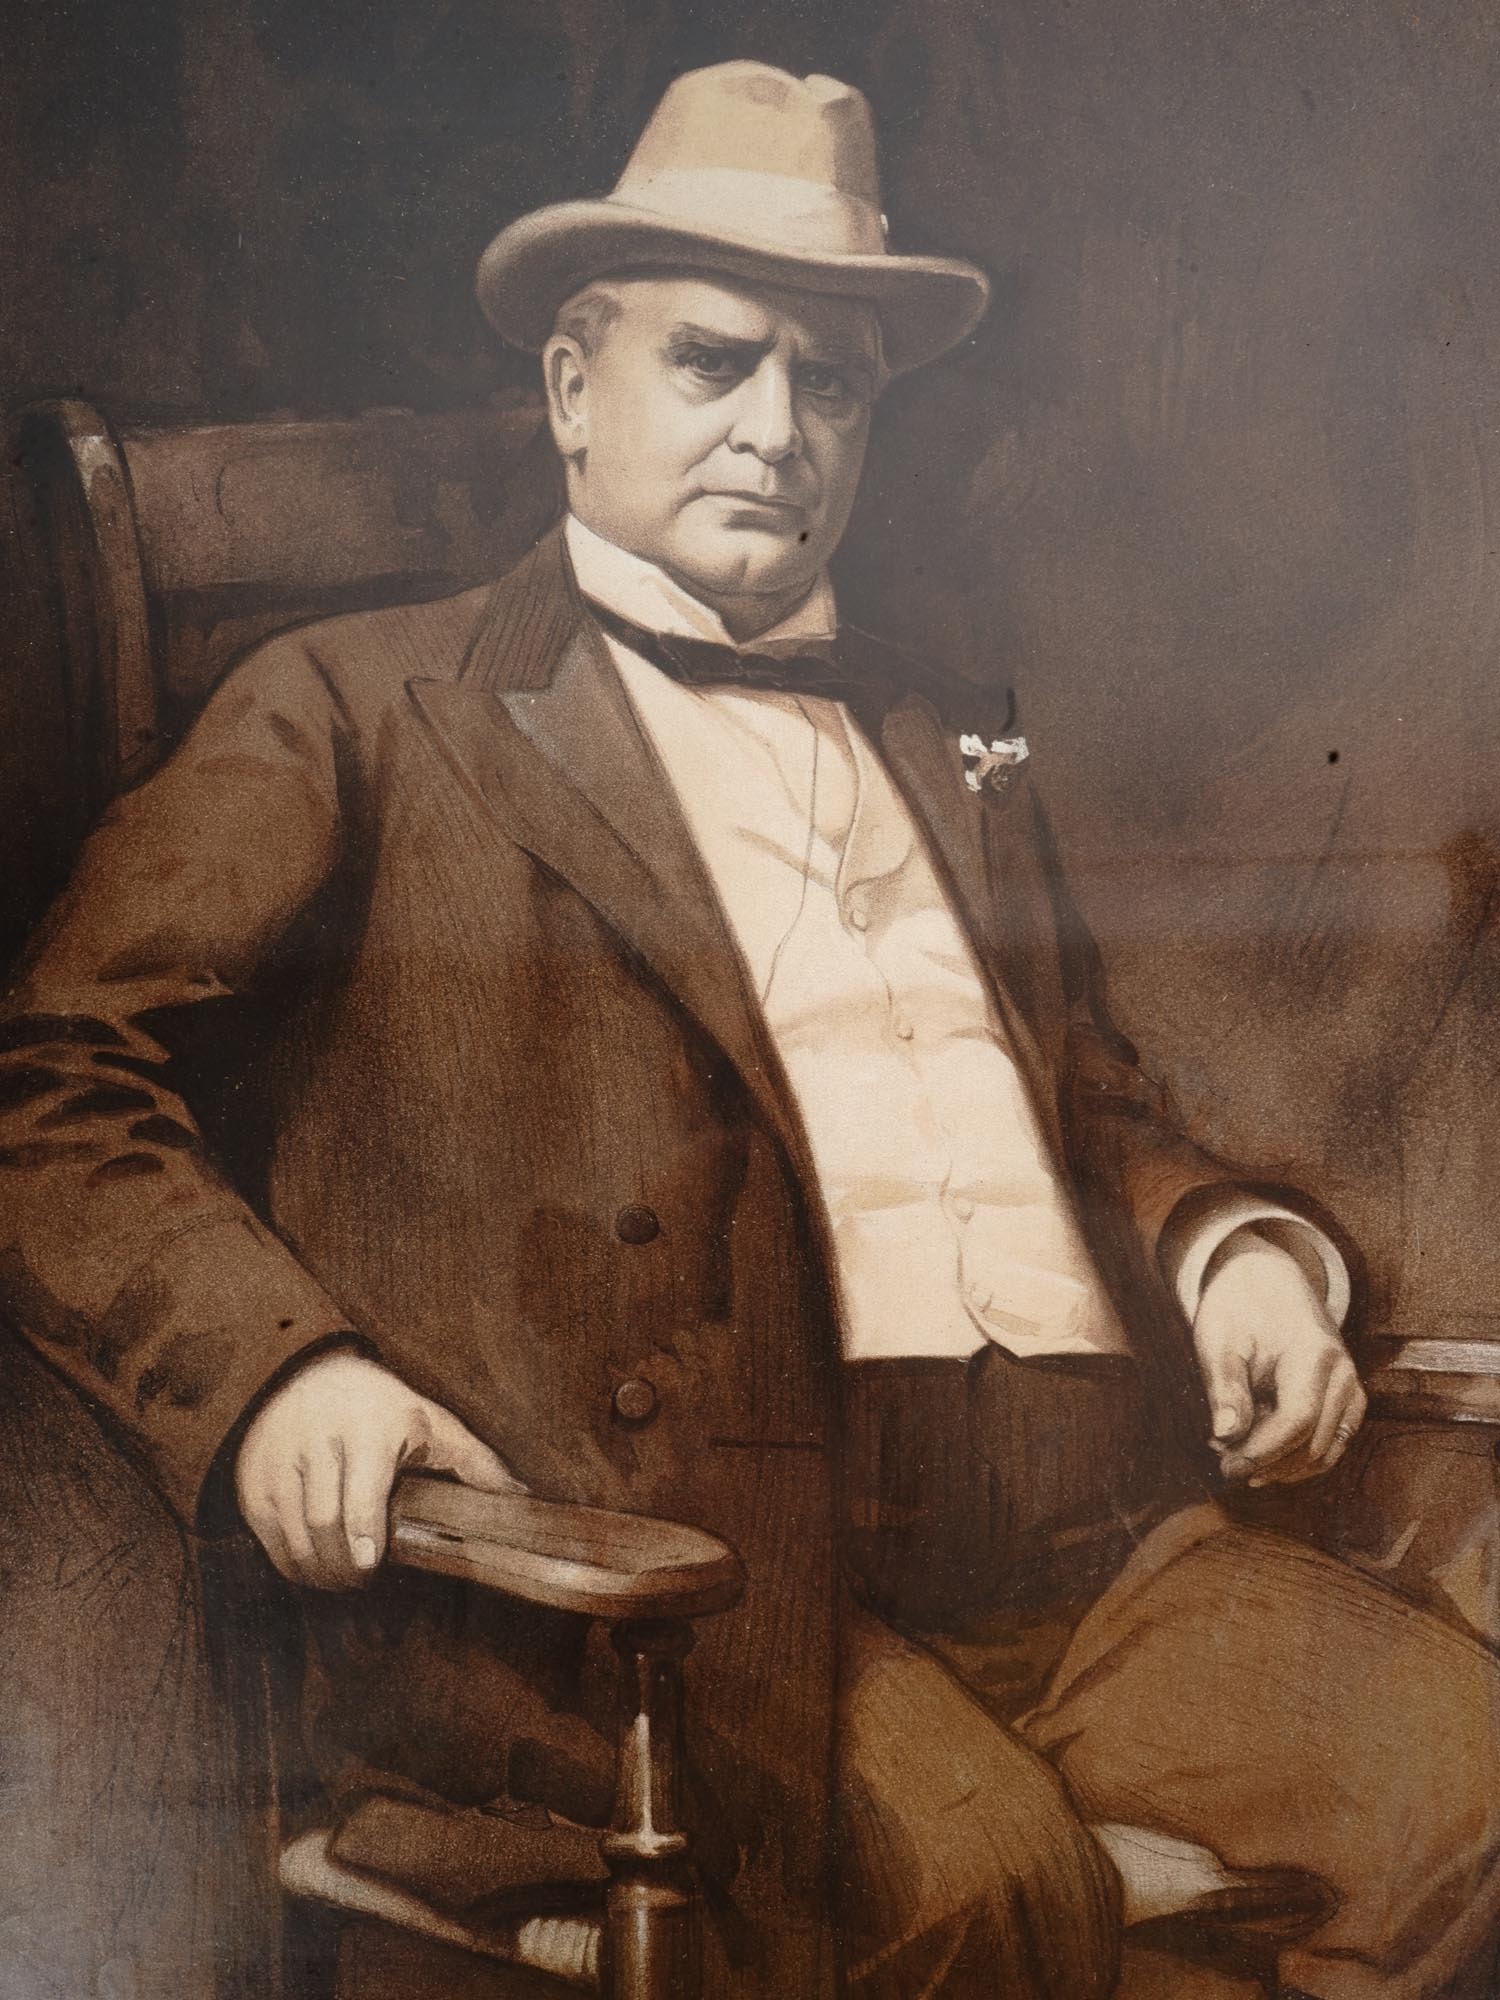 ANTIQUE 1901 PHOTO OF PRESIDENT WILLIAM MCKINLEY PIC-2